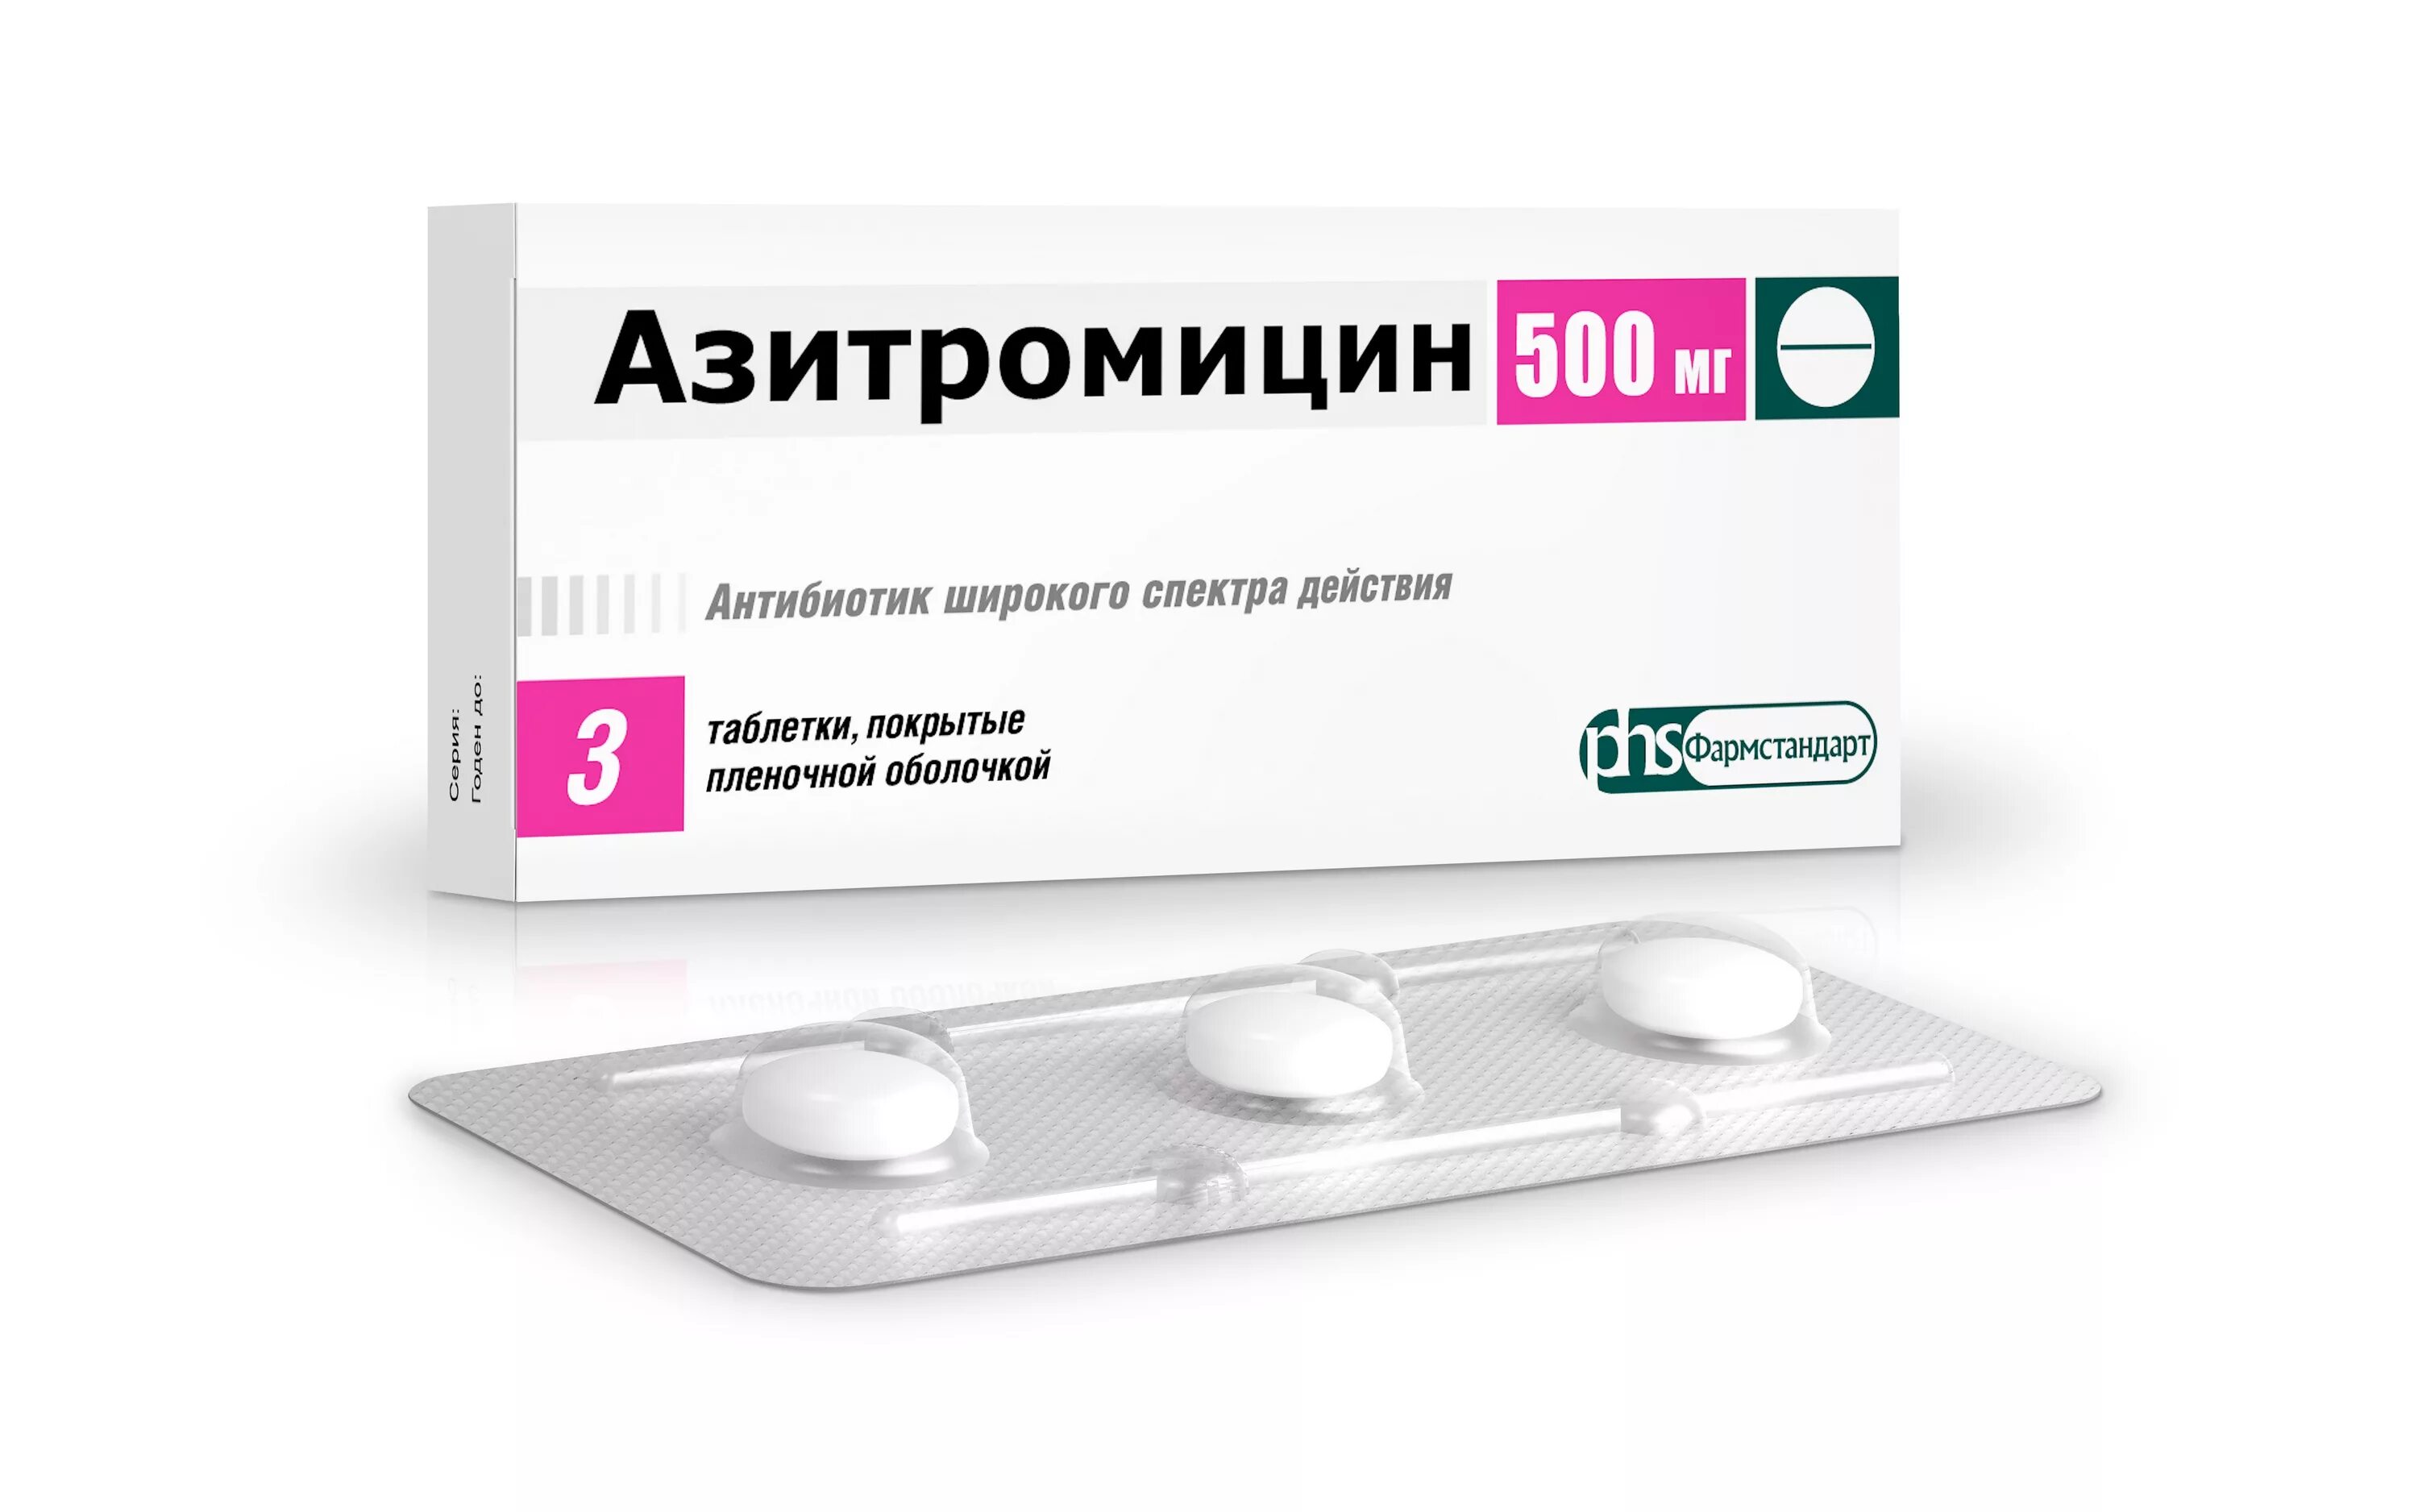 Азитромицин 500 мг. Азитромицин таблетки 500 мг. Азитромицин 500 мг 3. Азитромицин 500 Фармстандарт. Таблетки против антибиотиков